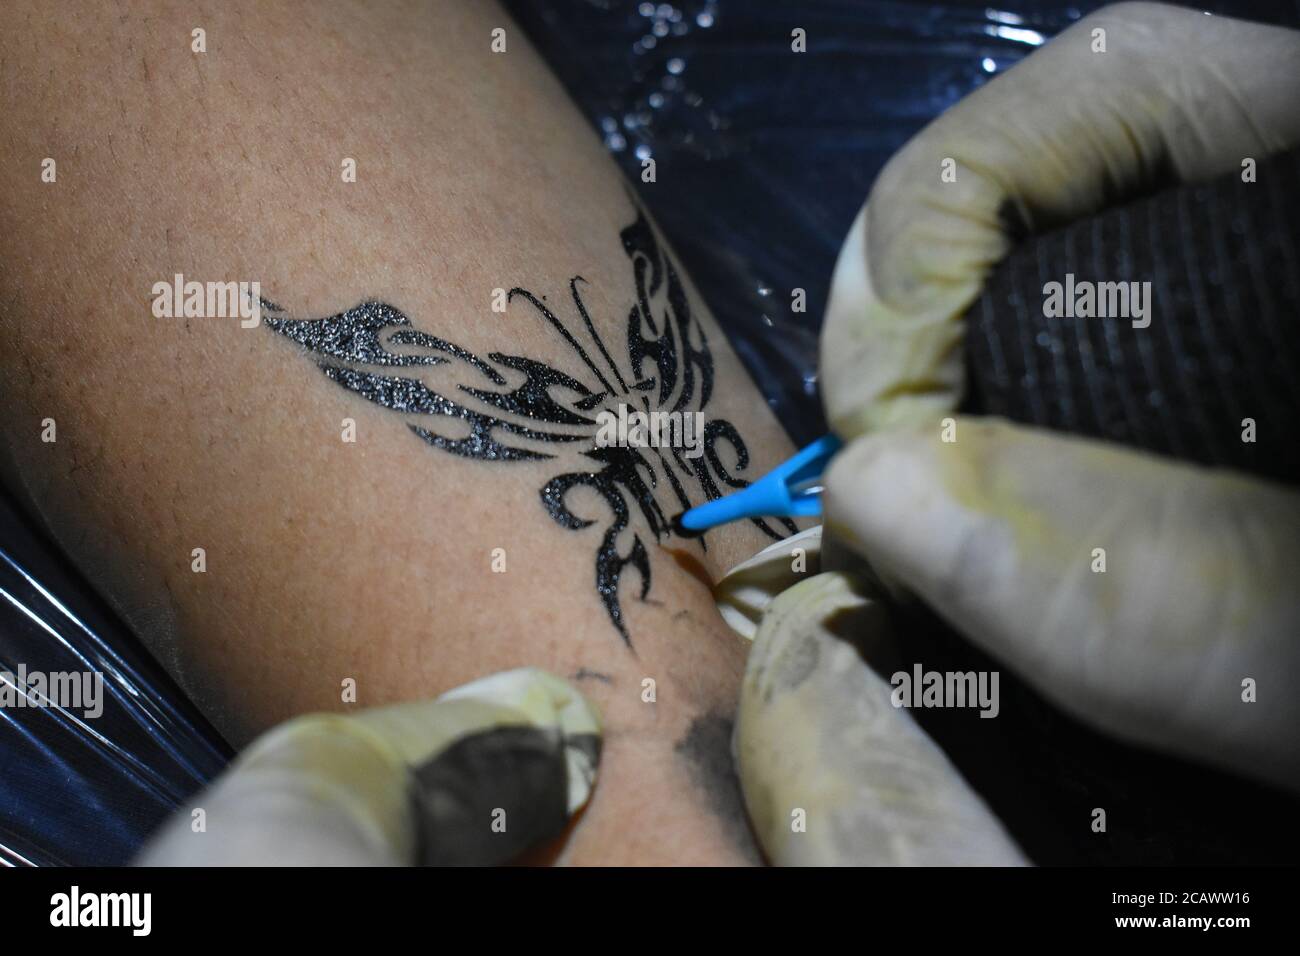 Choose The Best Tattoo Studio in Kolkata - Lizard's Skin Tattoos